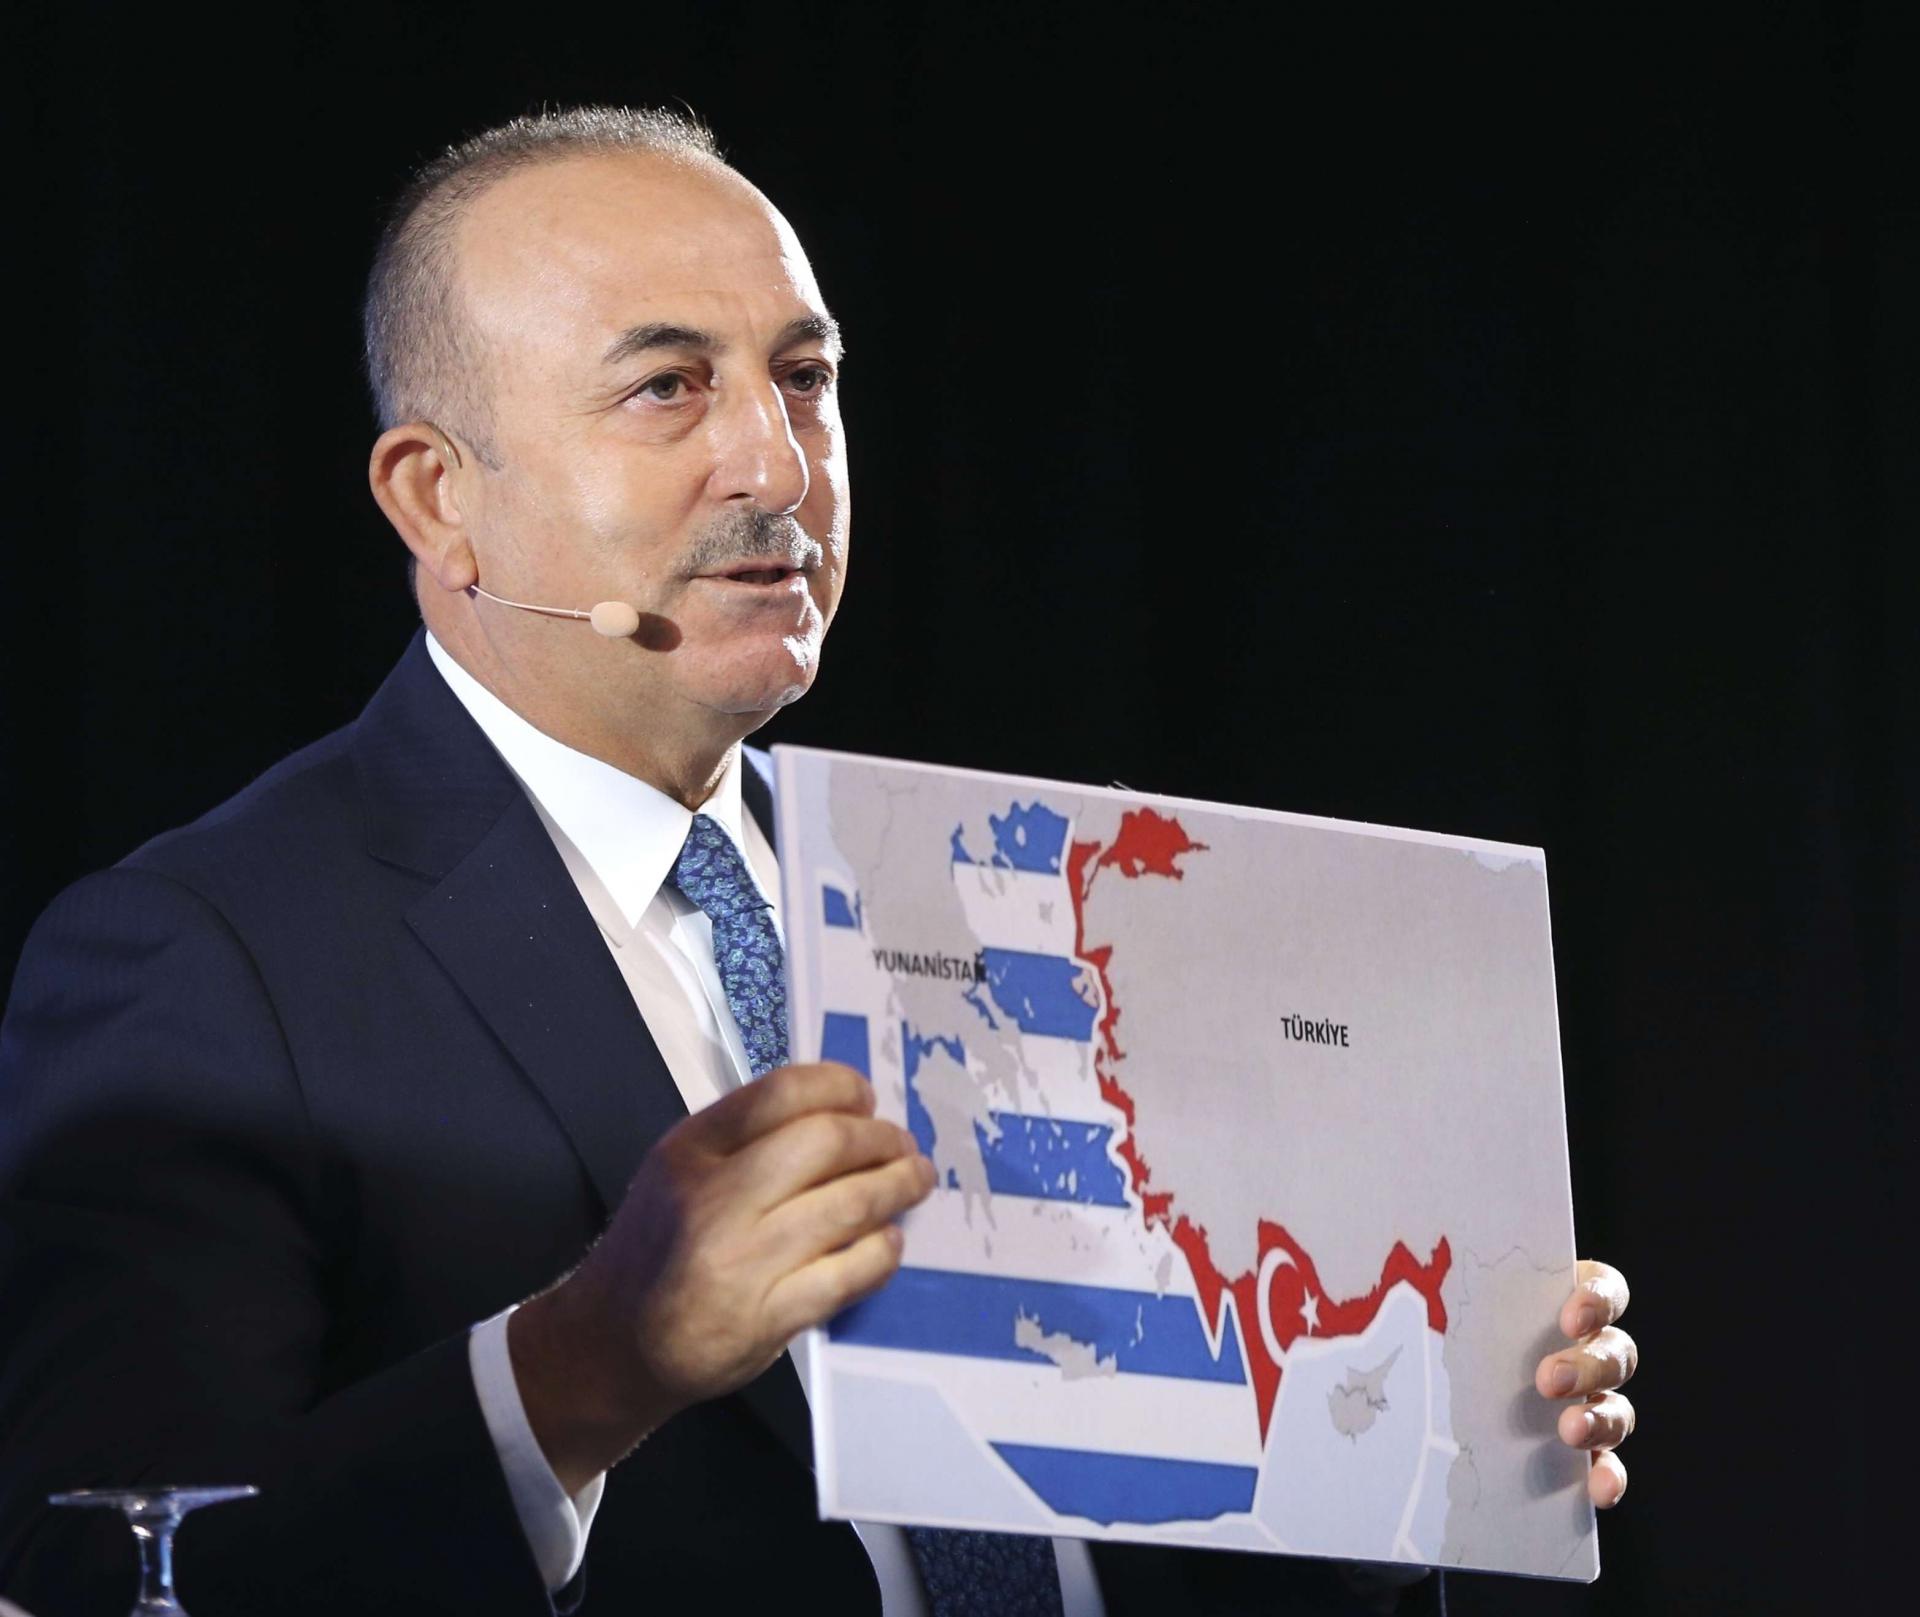 وزير الخارجية التركي مولود جاويش أوغلو يعرض خريطة لليونان وتركيا 